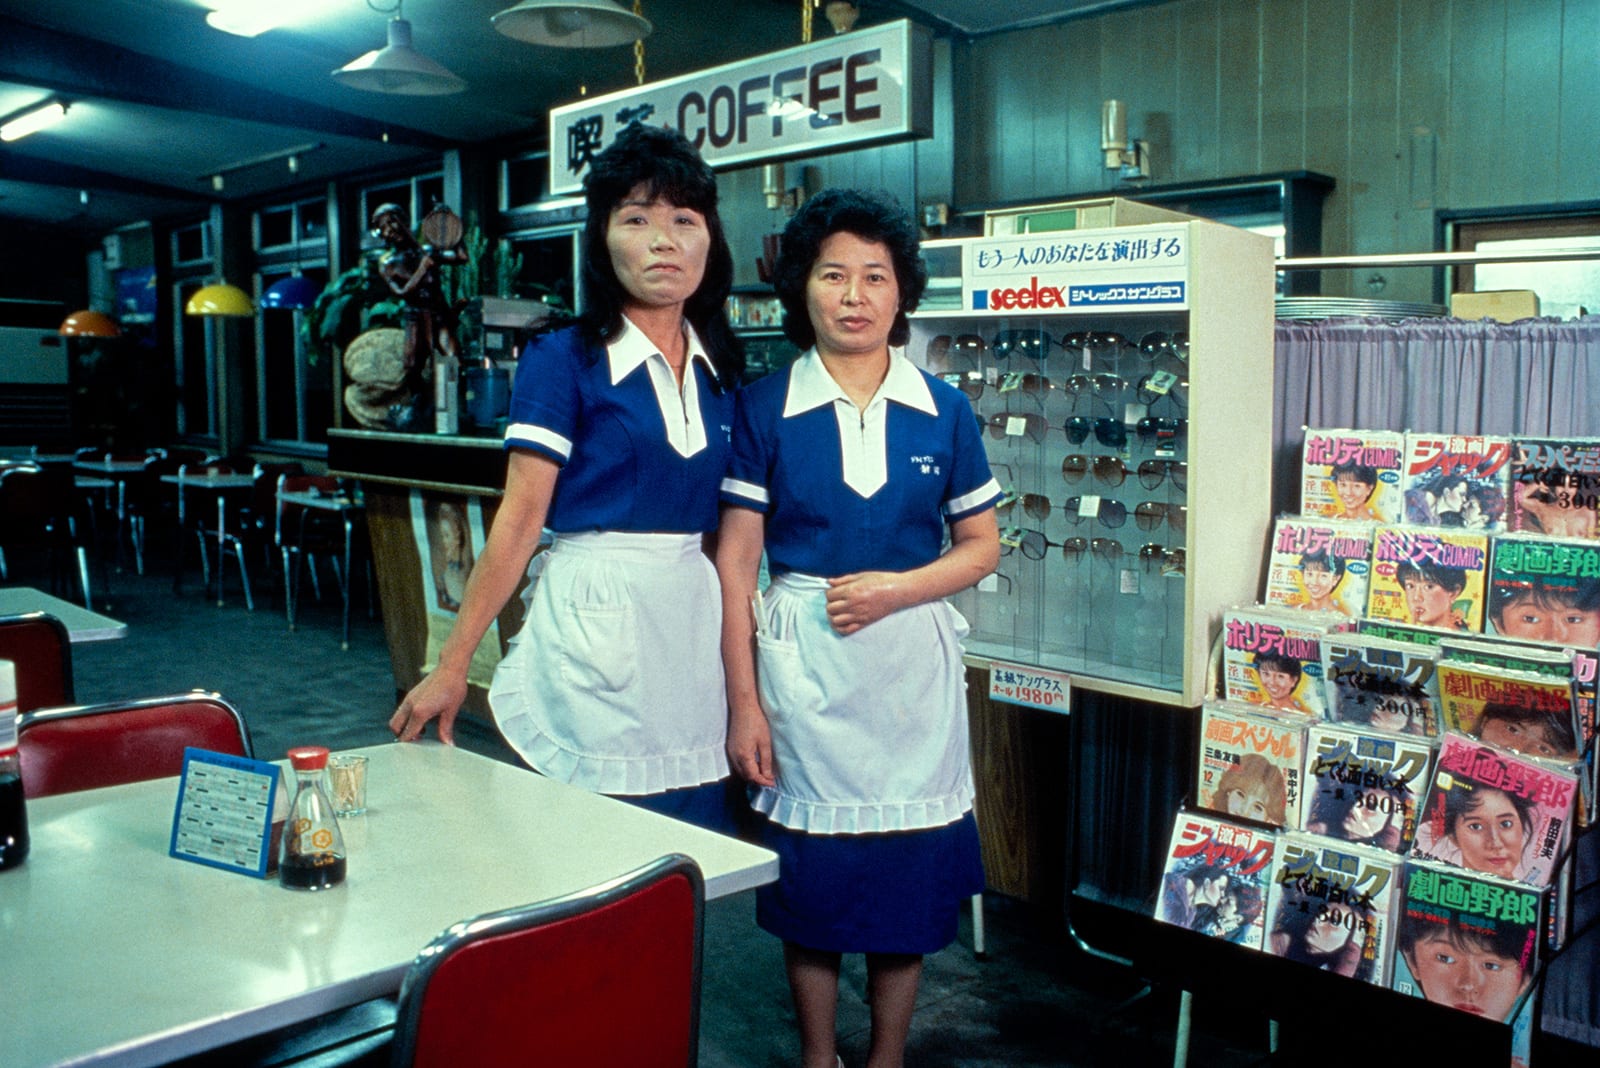 En Japón, estas fotos antiguas muestran un lado oculto que comenzó después de las horas de trabajo